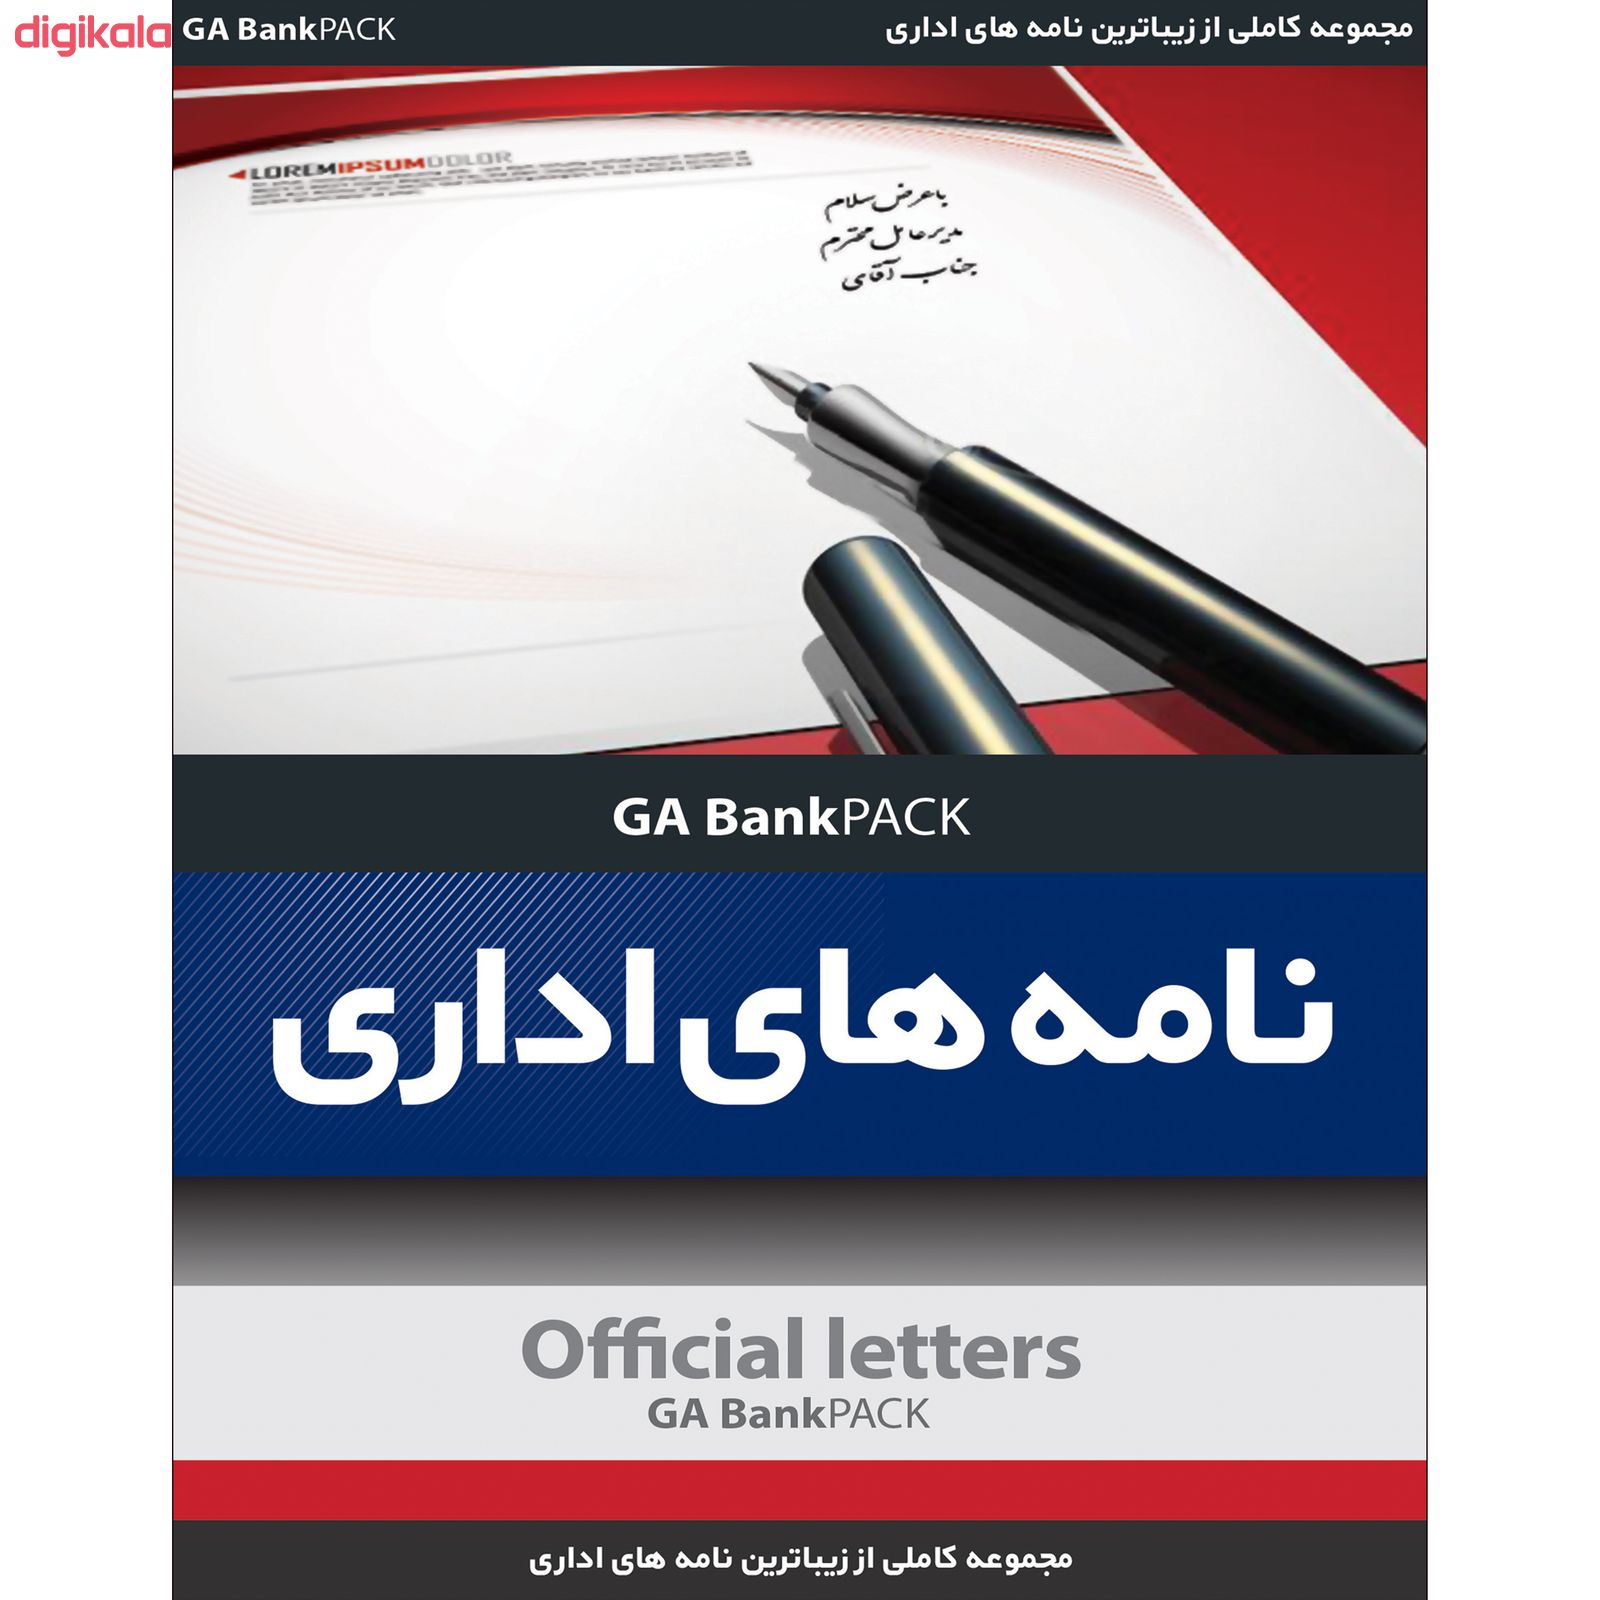 مجموعه نرم افزار نامه های اداری نشر جی ای بانک به همراه مجموعه طرح های لایه باز کاتالوگ بروشور نشر جی ای بانک